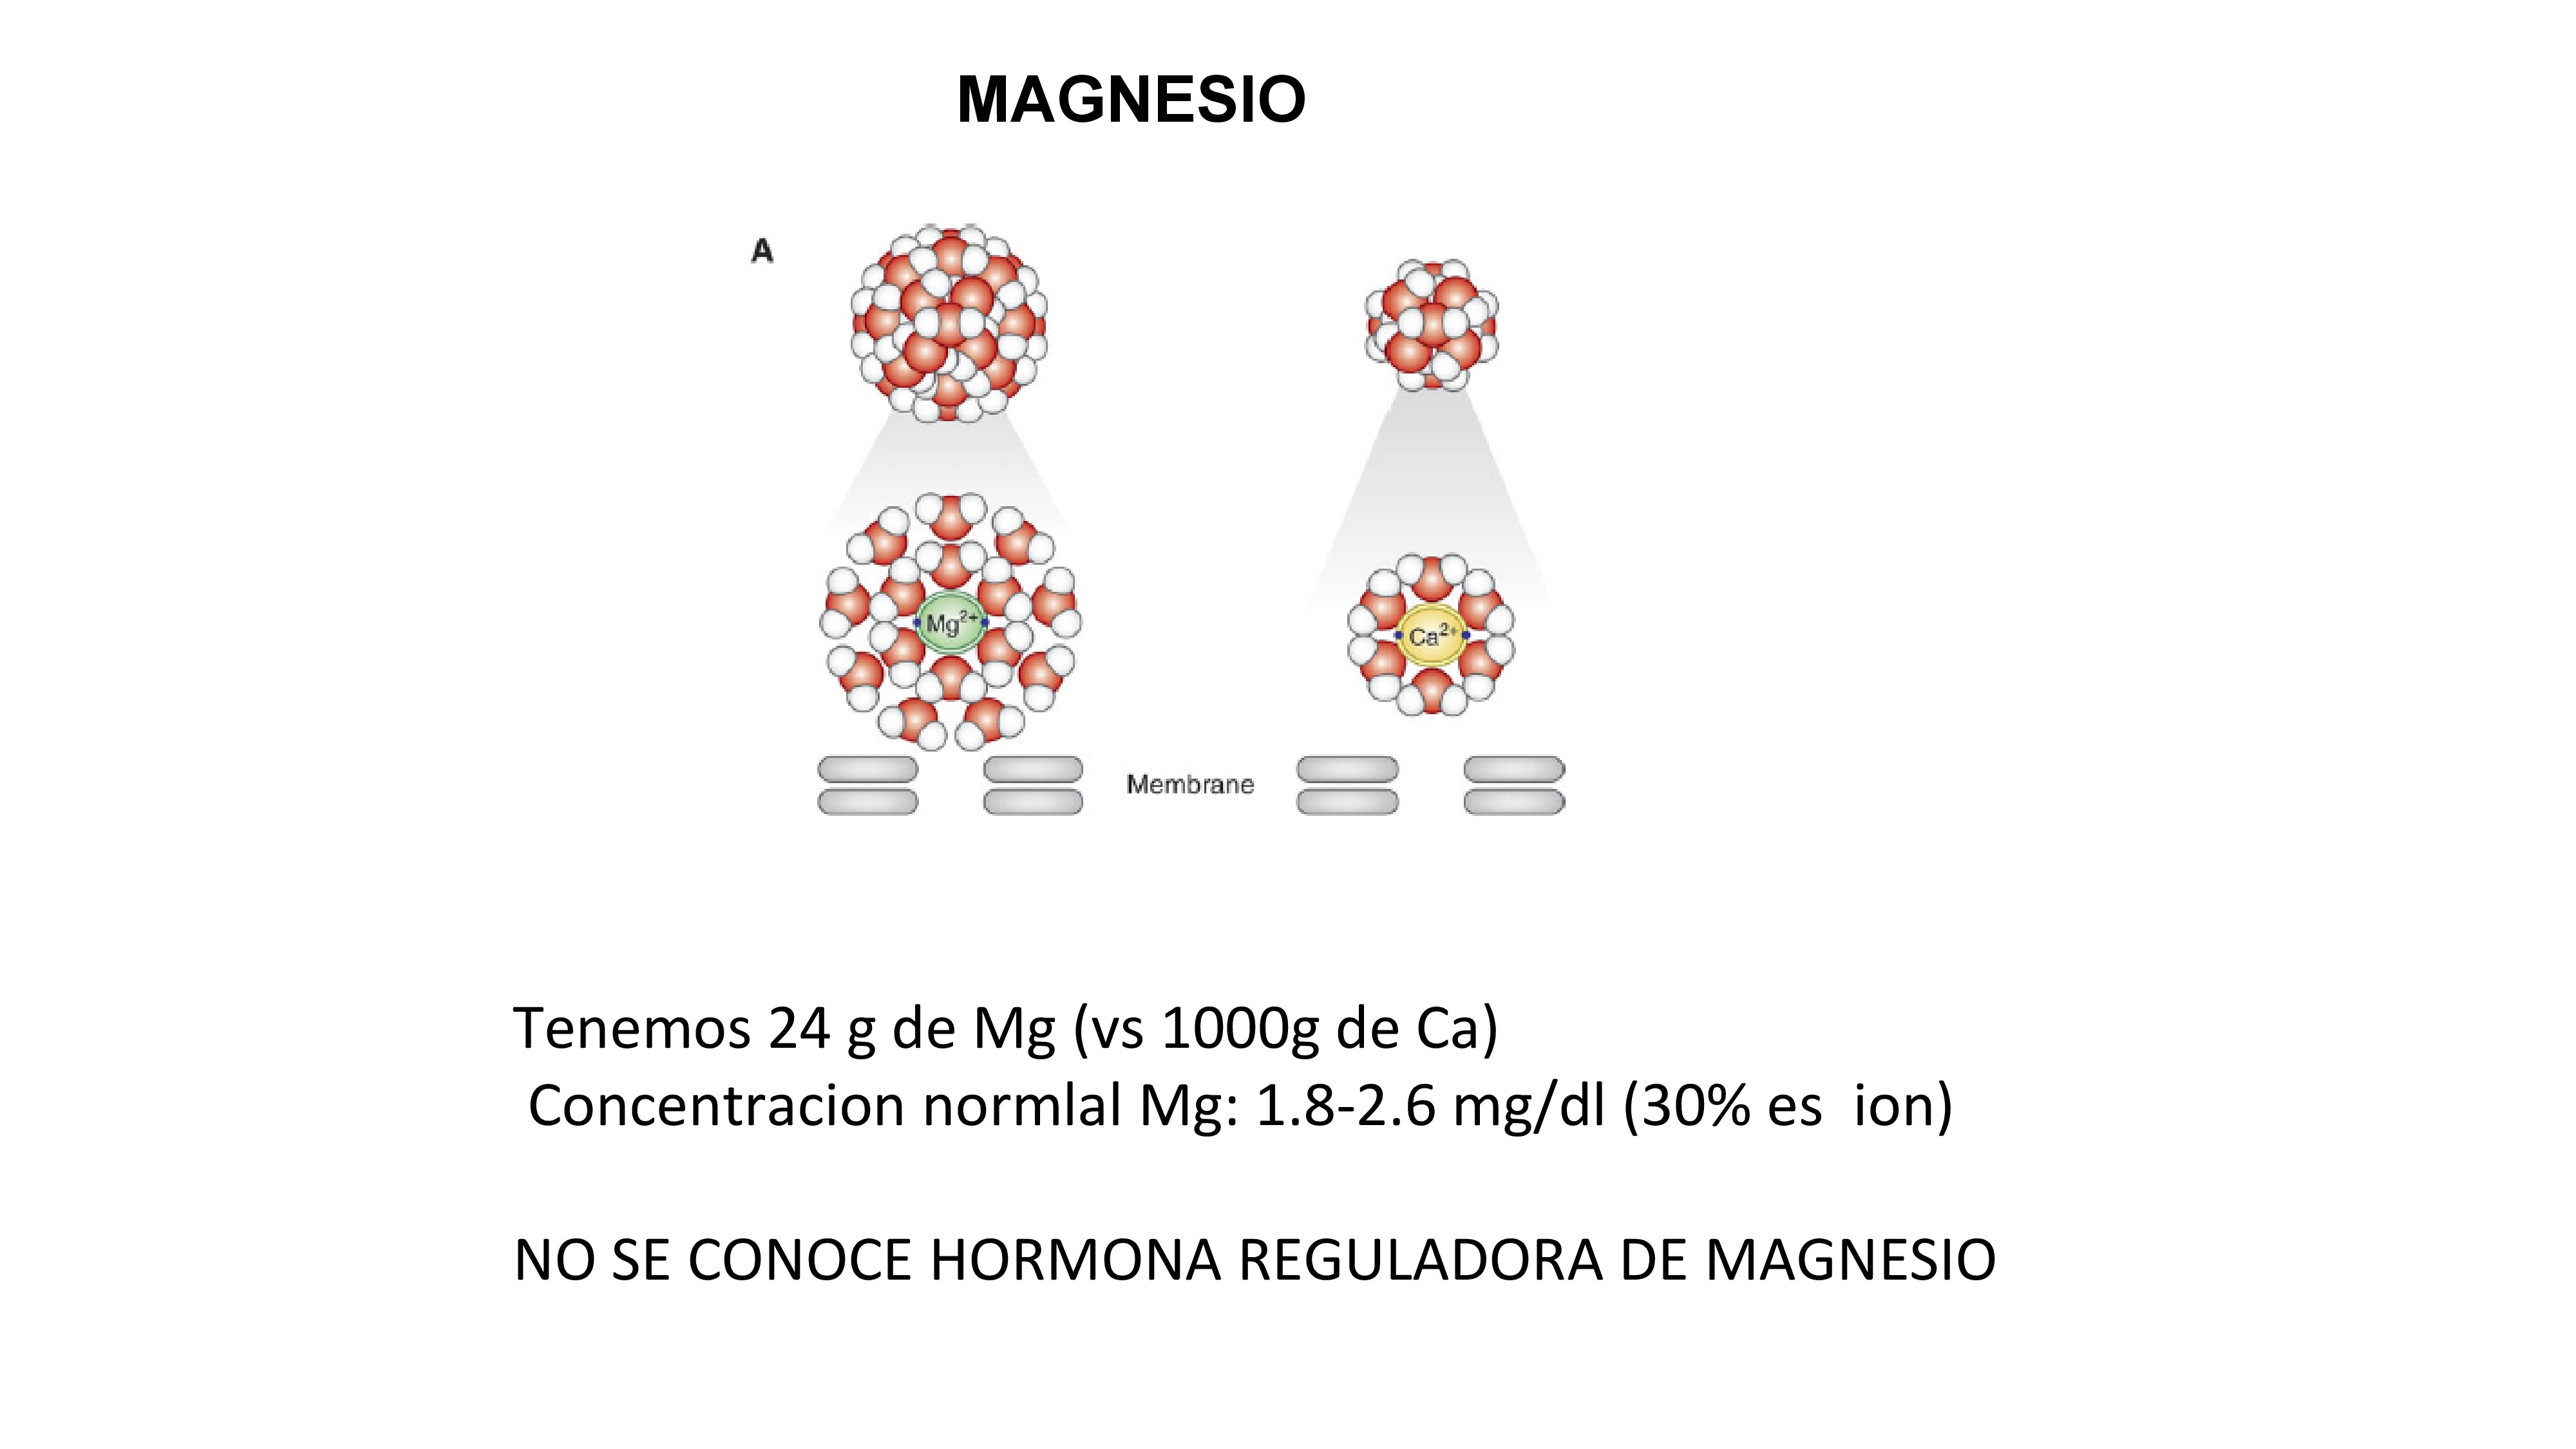 En el adulto normal, el magnesio corporal total es aproximadamente 24 g en comparación con 1000 g de calcio. No se conoce ninguna hormona que regule la concentración de magnesio. El magnesio extracelular es aproximadamente 60% ionizado, 30% unido a proteínas y 10% en forma de sales. Magnesio sérico normal (sMg) varía de 1.8 a 2.6 mg / dl - El magnesio es cofactor de más de 300 enzimáticos reacciones . El radio de magnesio hidratado es 16 veces más grande que el calcio hidratado quizás explicando la dificultad del magnesio para pasar a través de canales biológicos estrechos fácilmente atravesado por el calcio. - Finalmente, magnesio es un conocido inhibidor de la calcificación de tejido blando, incluida la vasculatura.